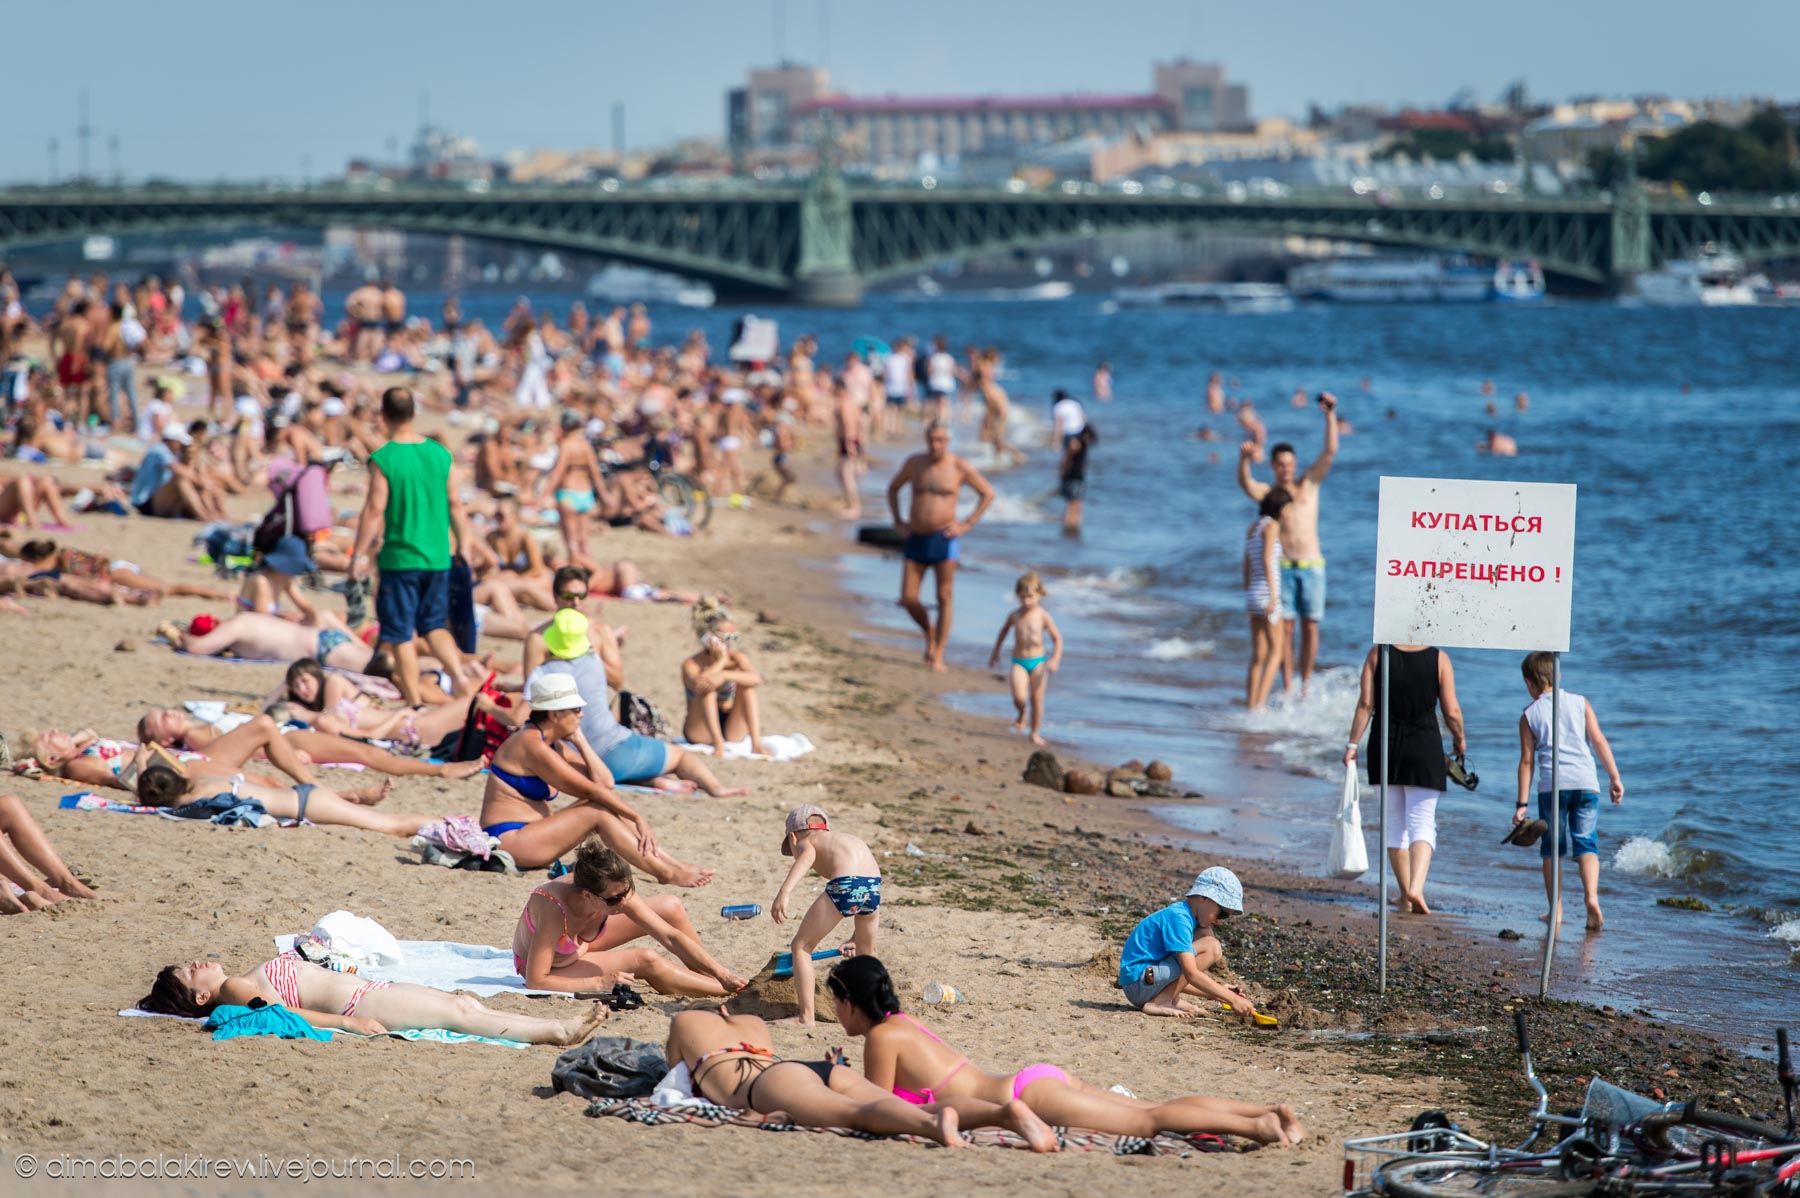 Петербург где купаться. Люди на пляже. Пляж с отдыхающими. Пляж Санкт-Петербург. Переполненные пляжи.